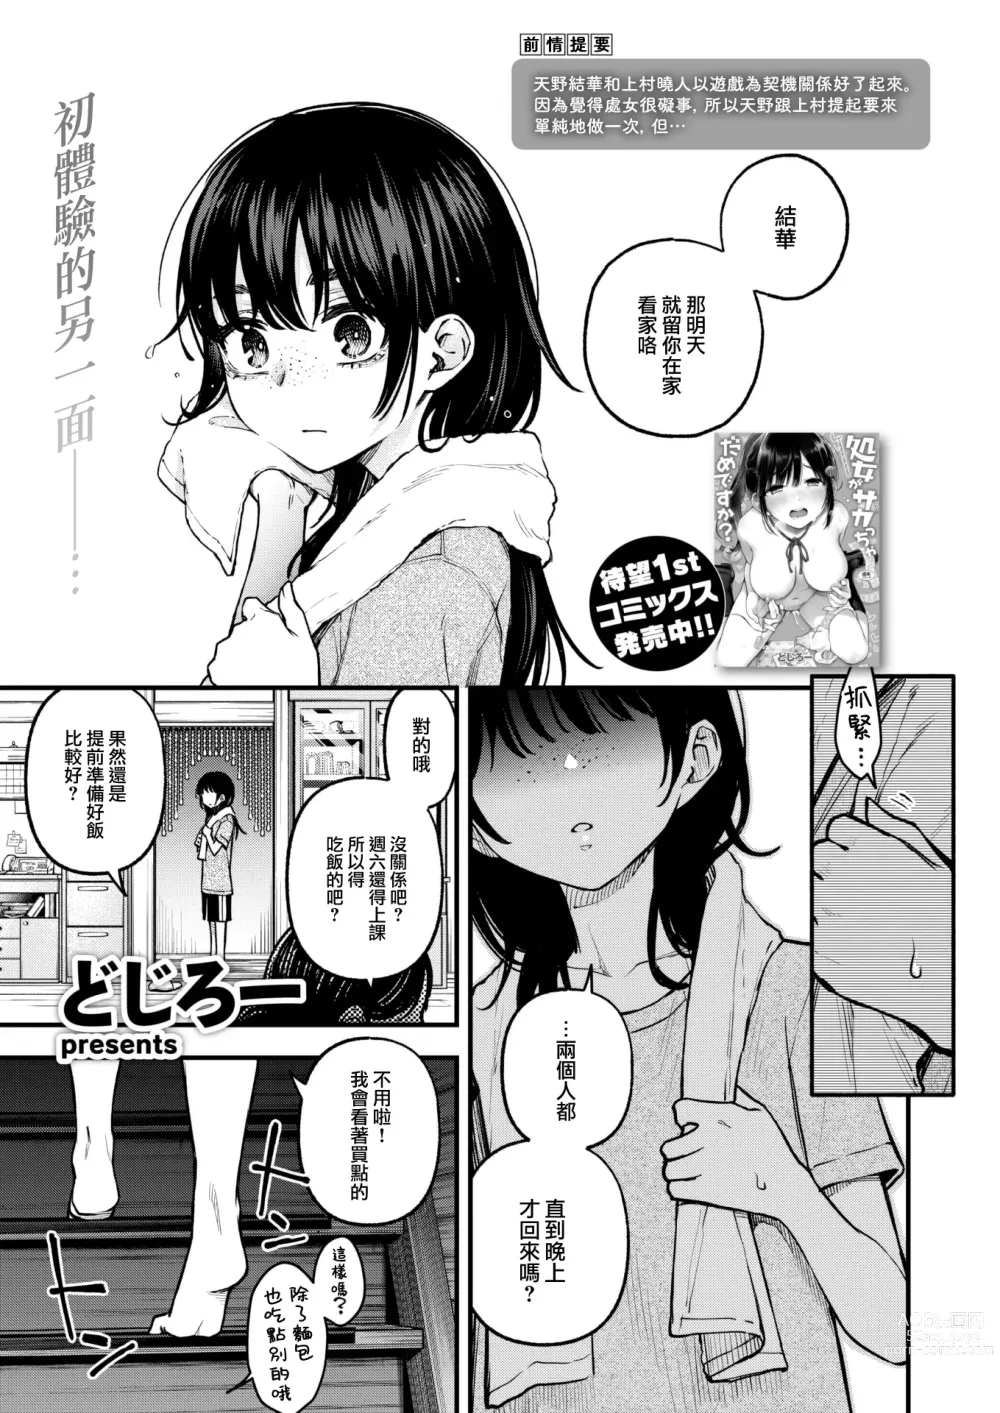 Page 2 of manga InCha Doushi no Sex ga Ichiban Eroiyo ne #2 -Amano Yuka no Baai-